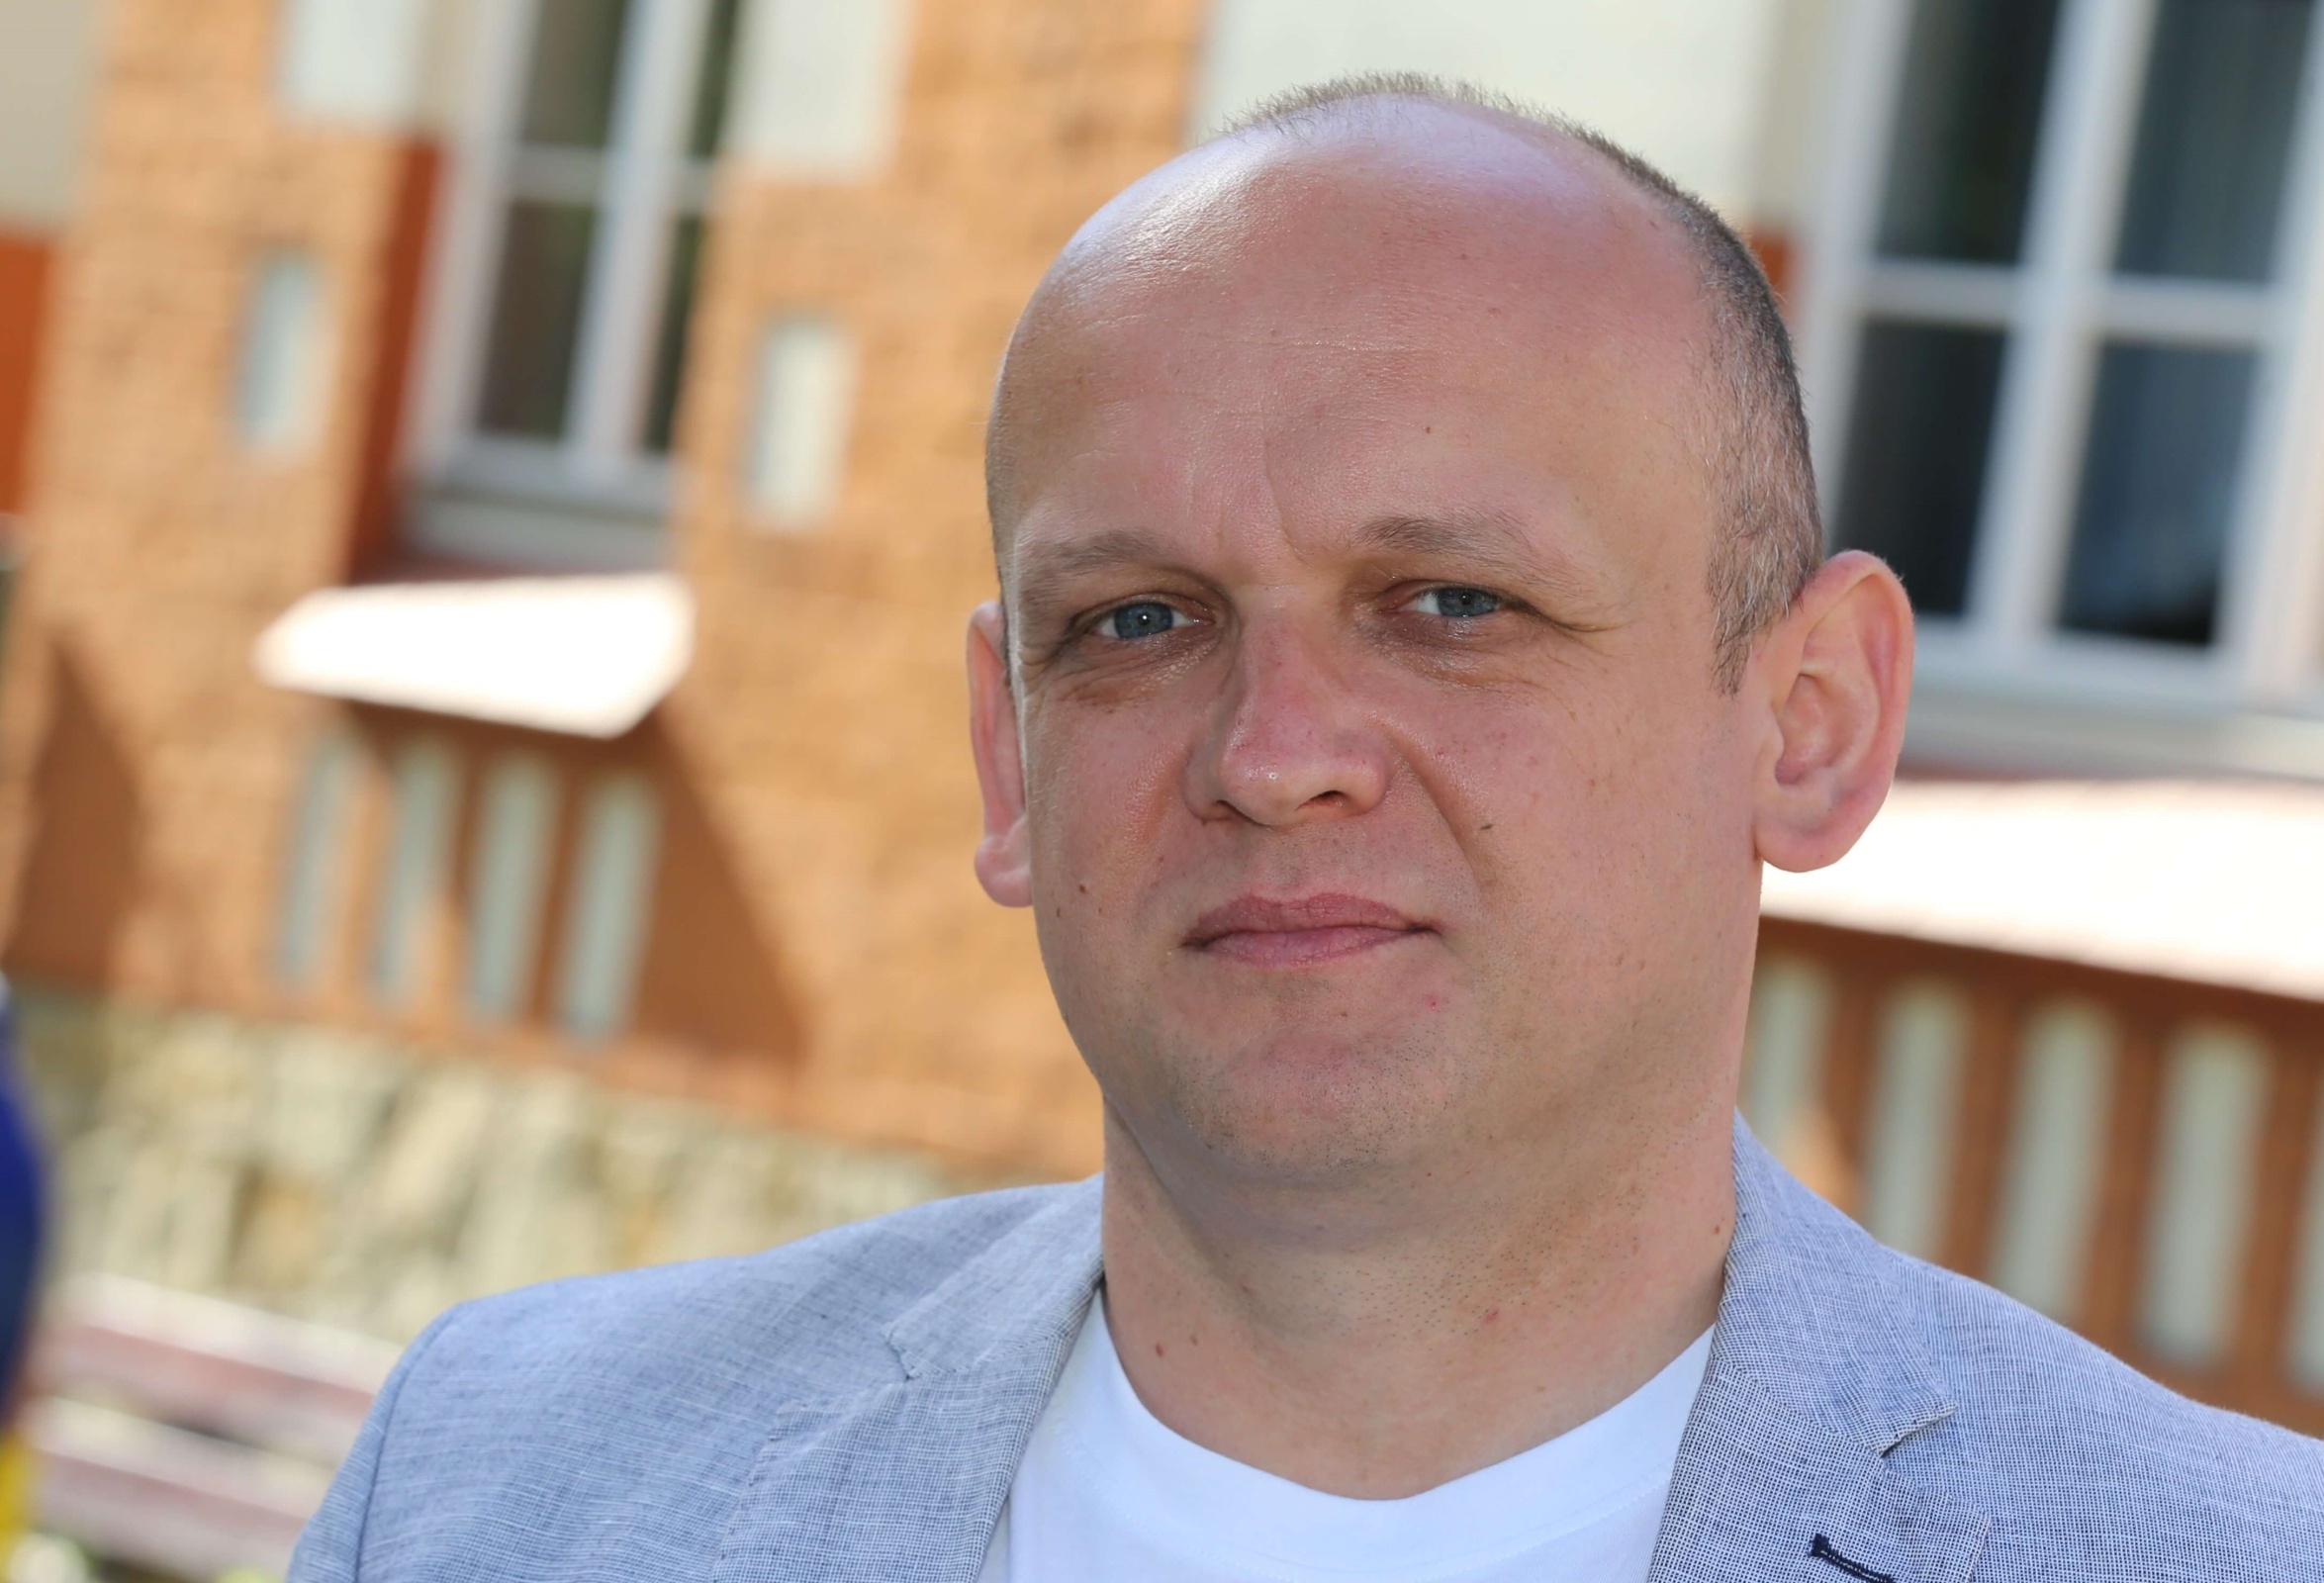 Remigiusz Michalik (46 lat) w miejskim Za kładzie Gospodarki Mieszkaniowej pracuje od 21 lat. Zdj. Wacław Troszka